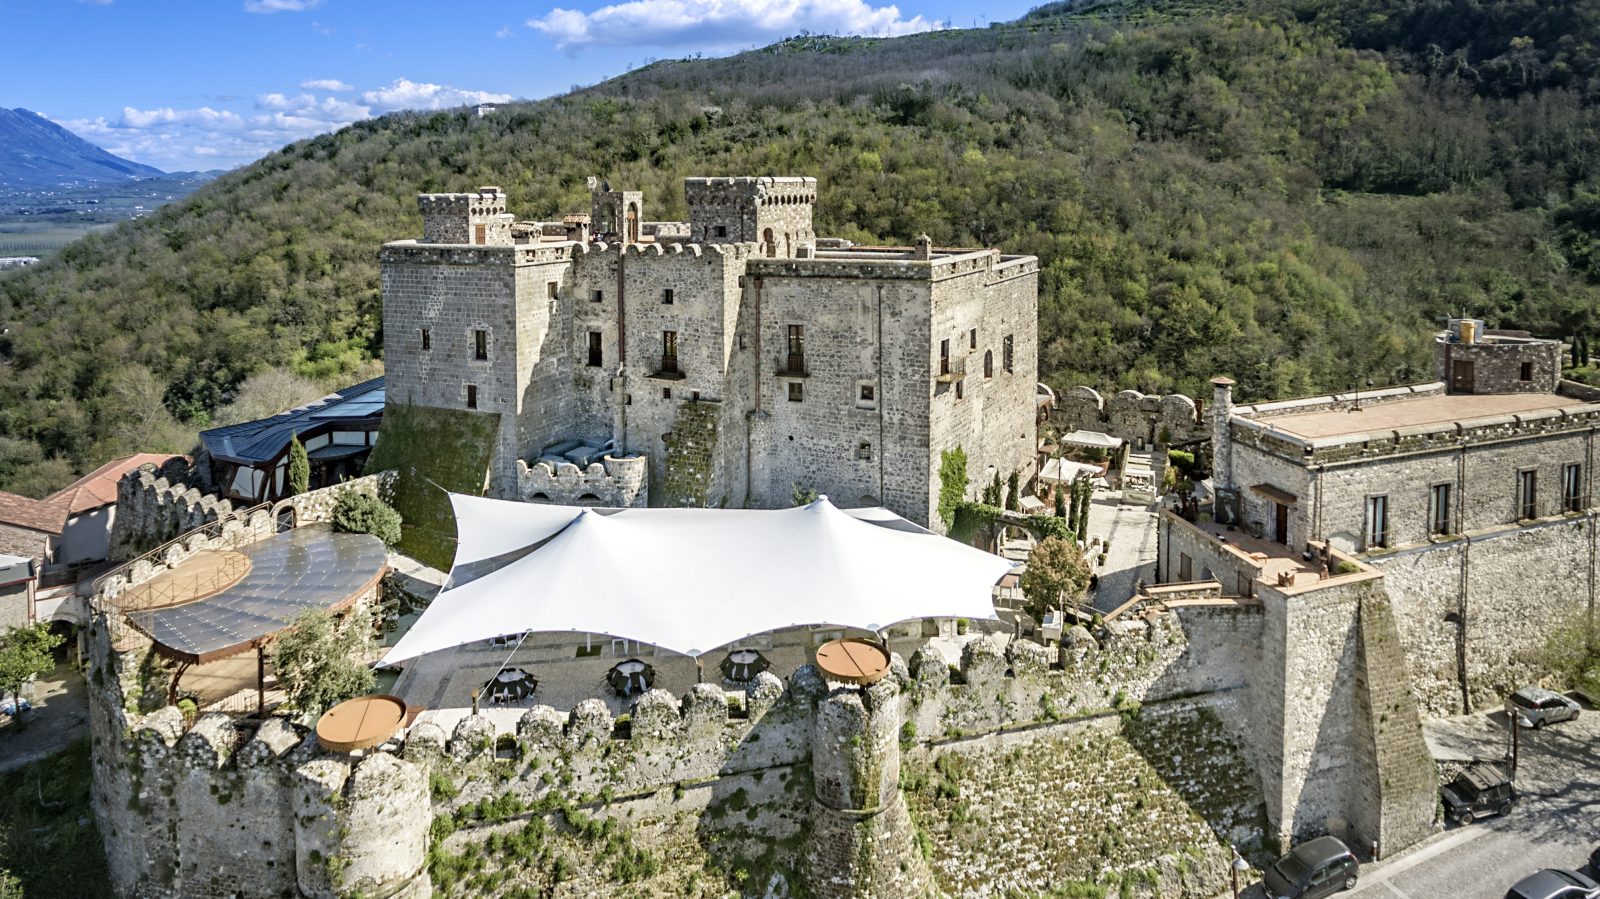 castello di limatola, location campania, castello di limatola matrimoni, castello di limatola wedding, wedding campania, castelli campania